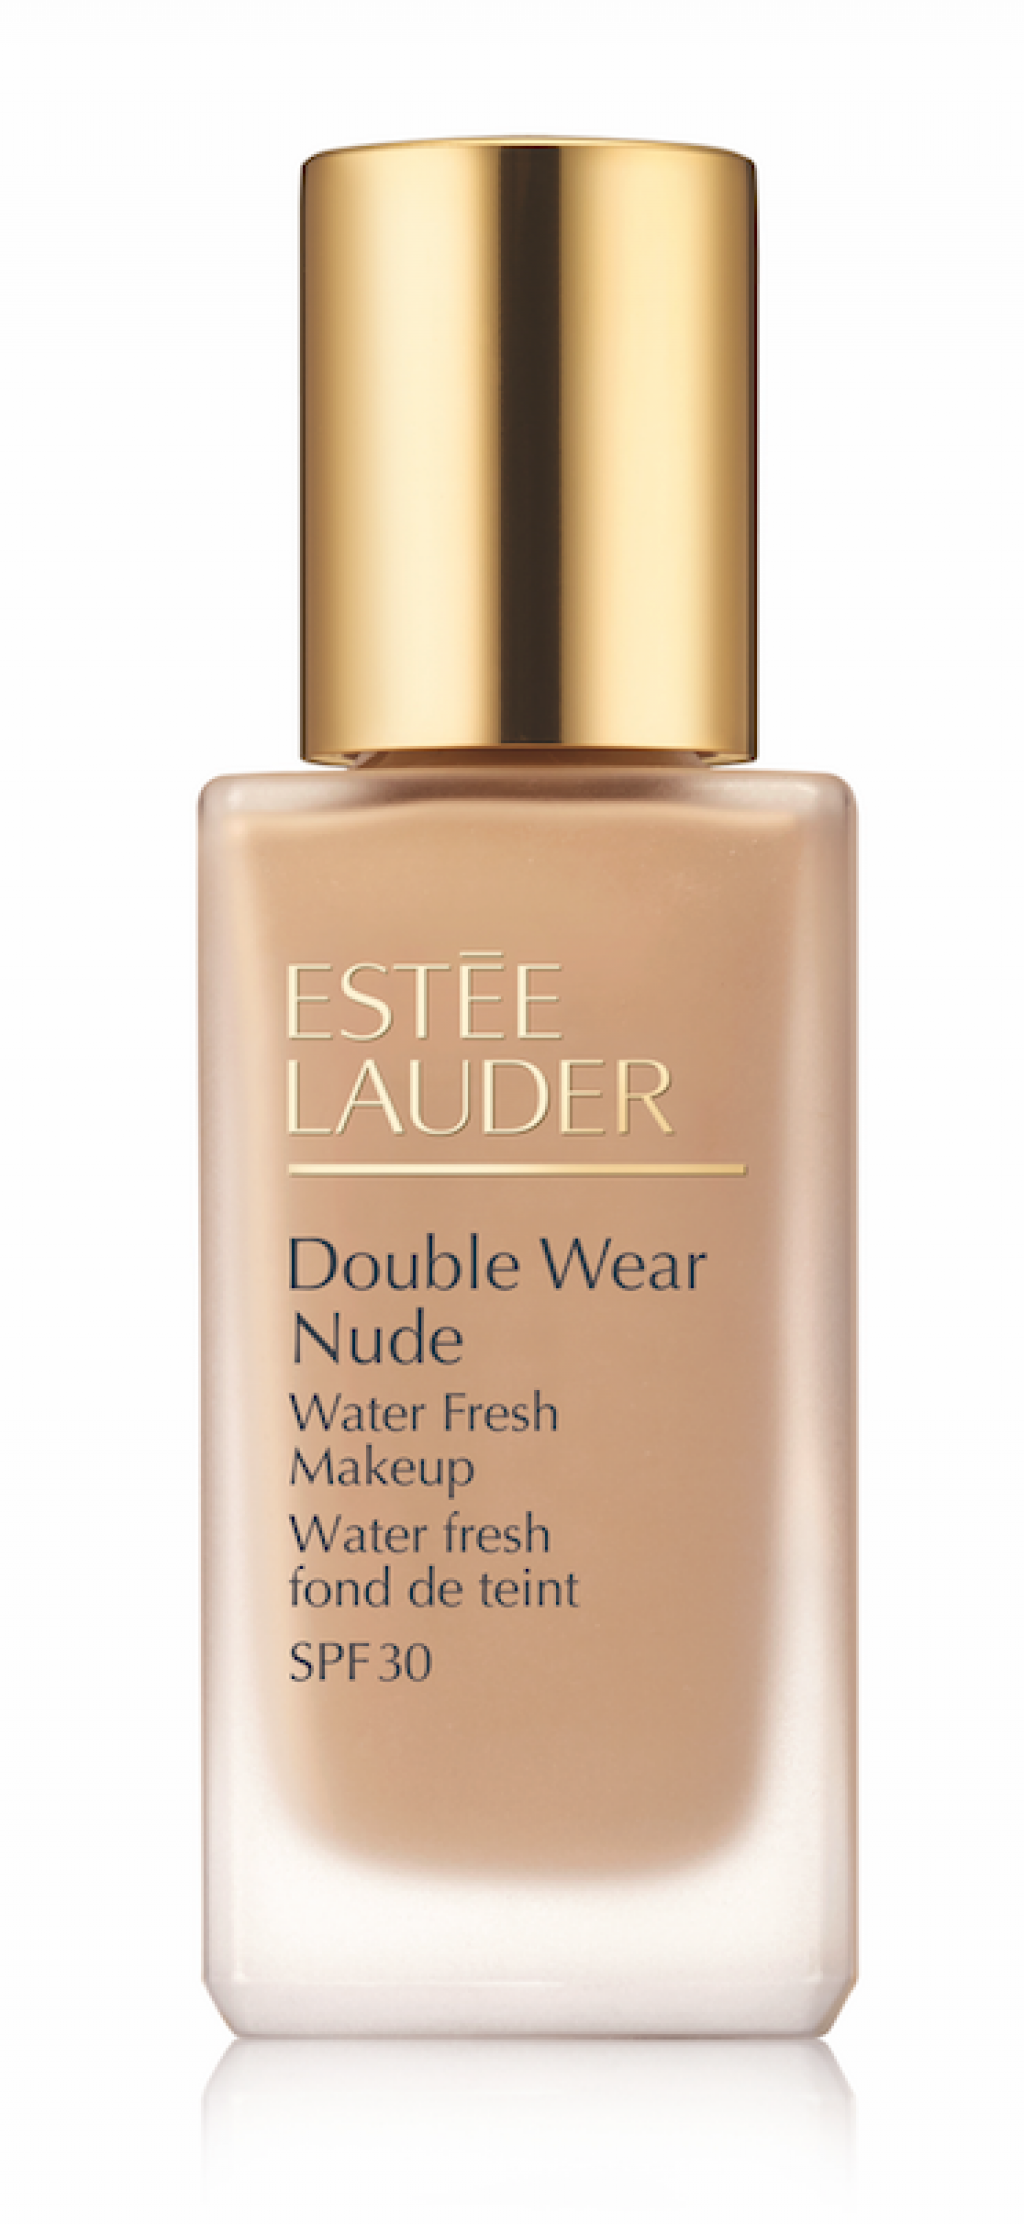 Estee Lauder Double Wear Nude Water Fresh Makeup Spf 30 